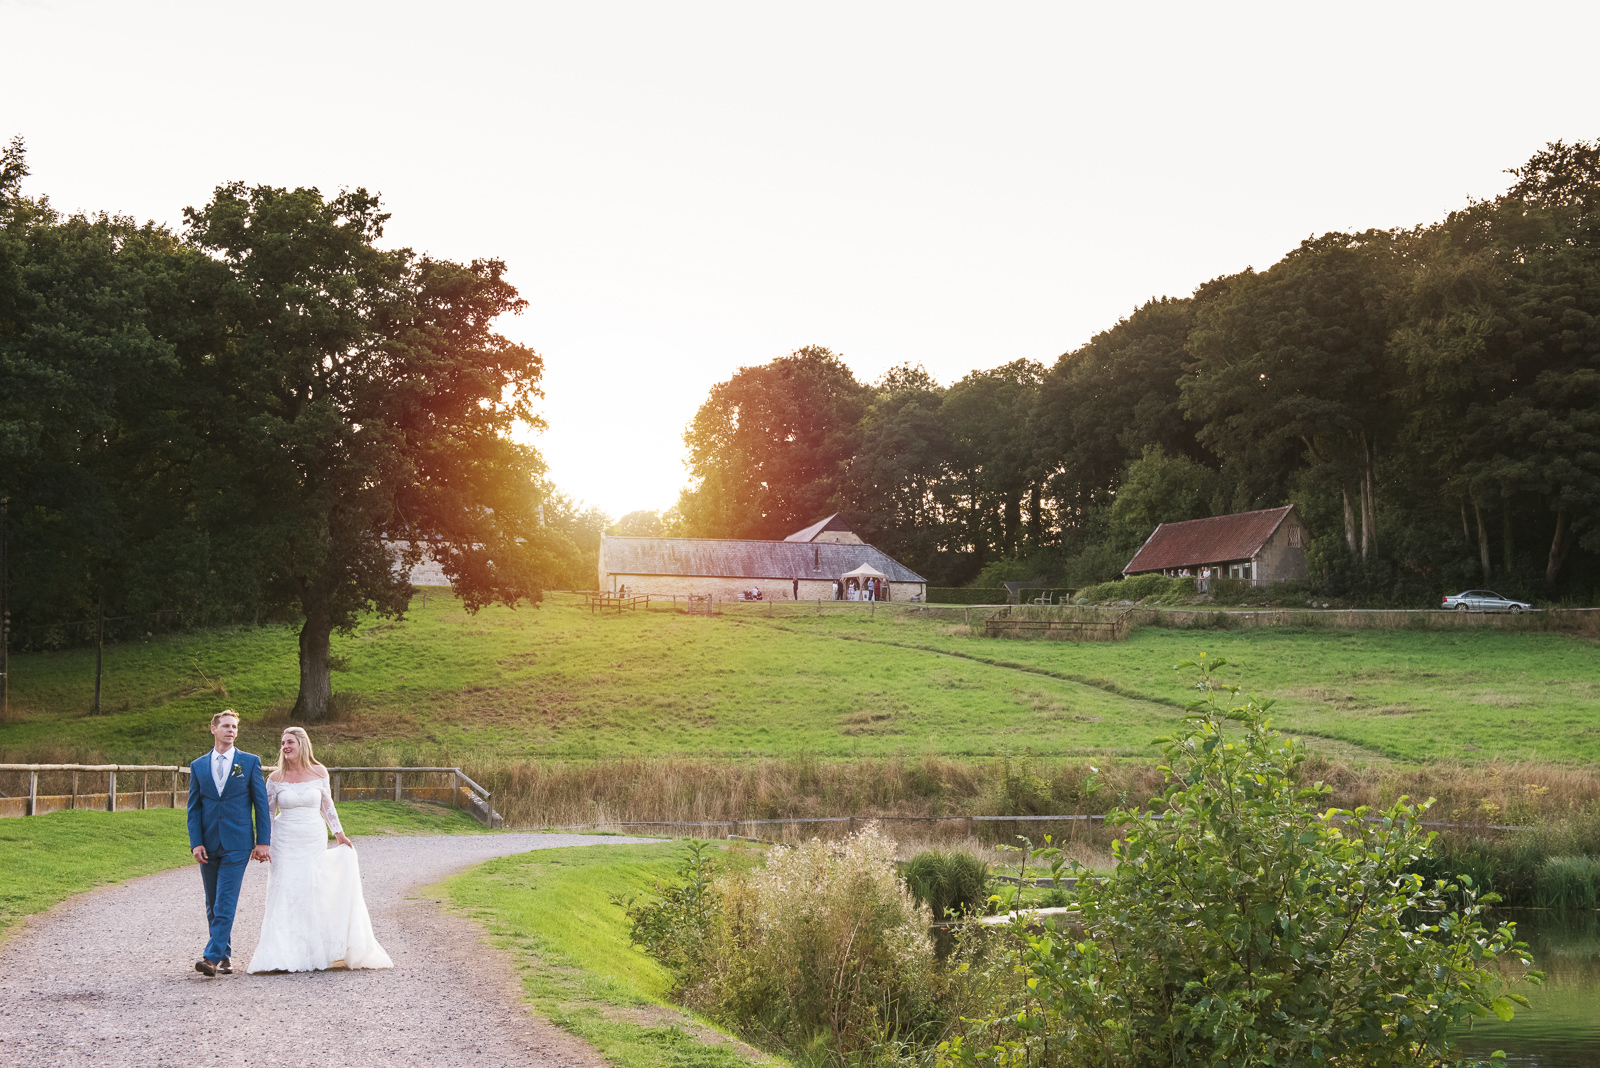 Ashley Wood Farm wedding photographs taken at sunset.